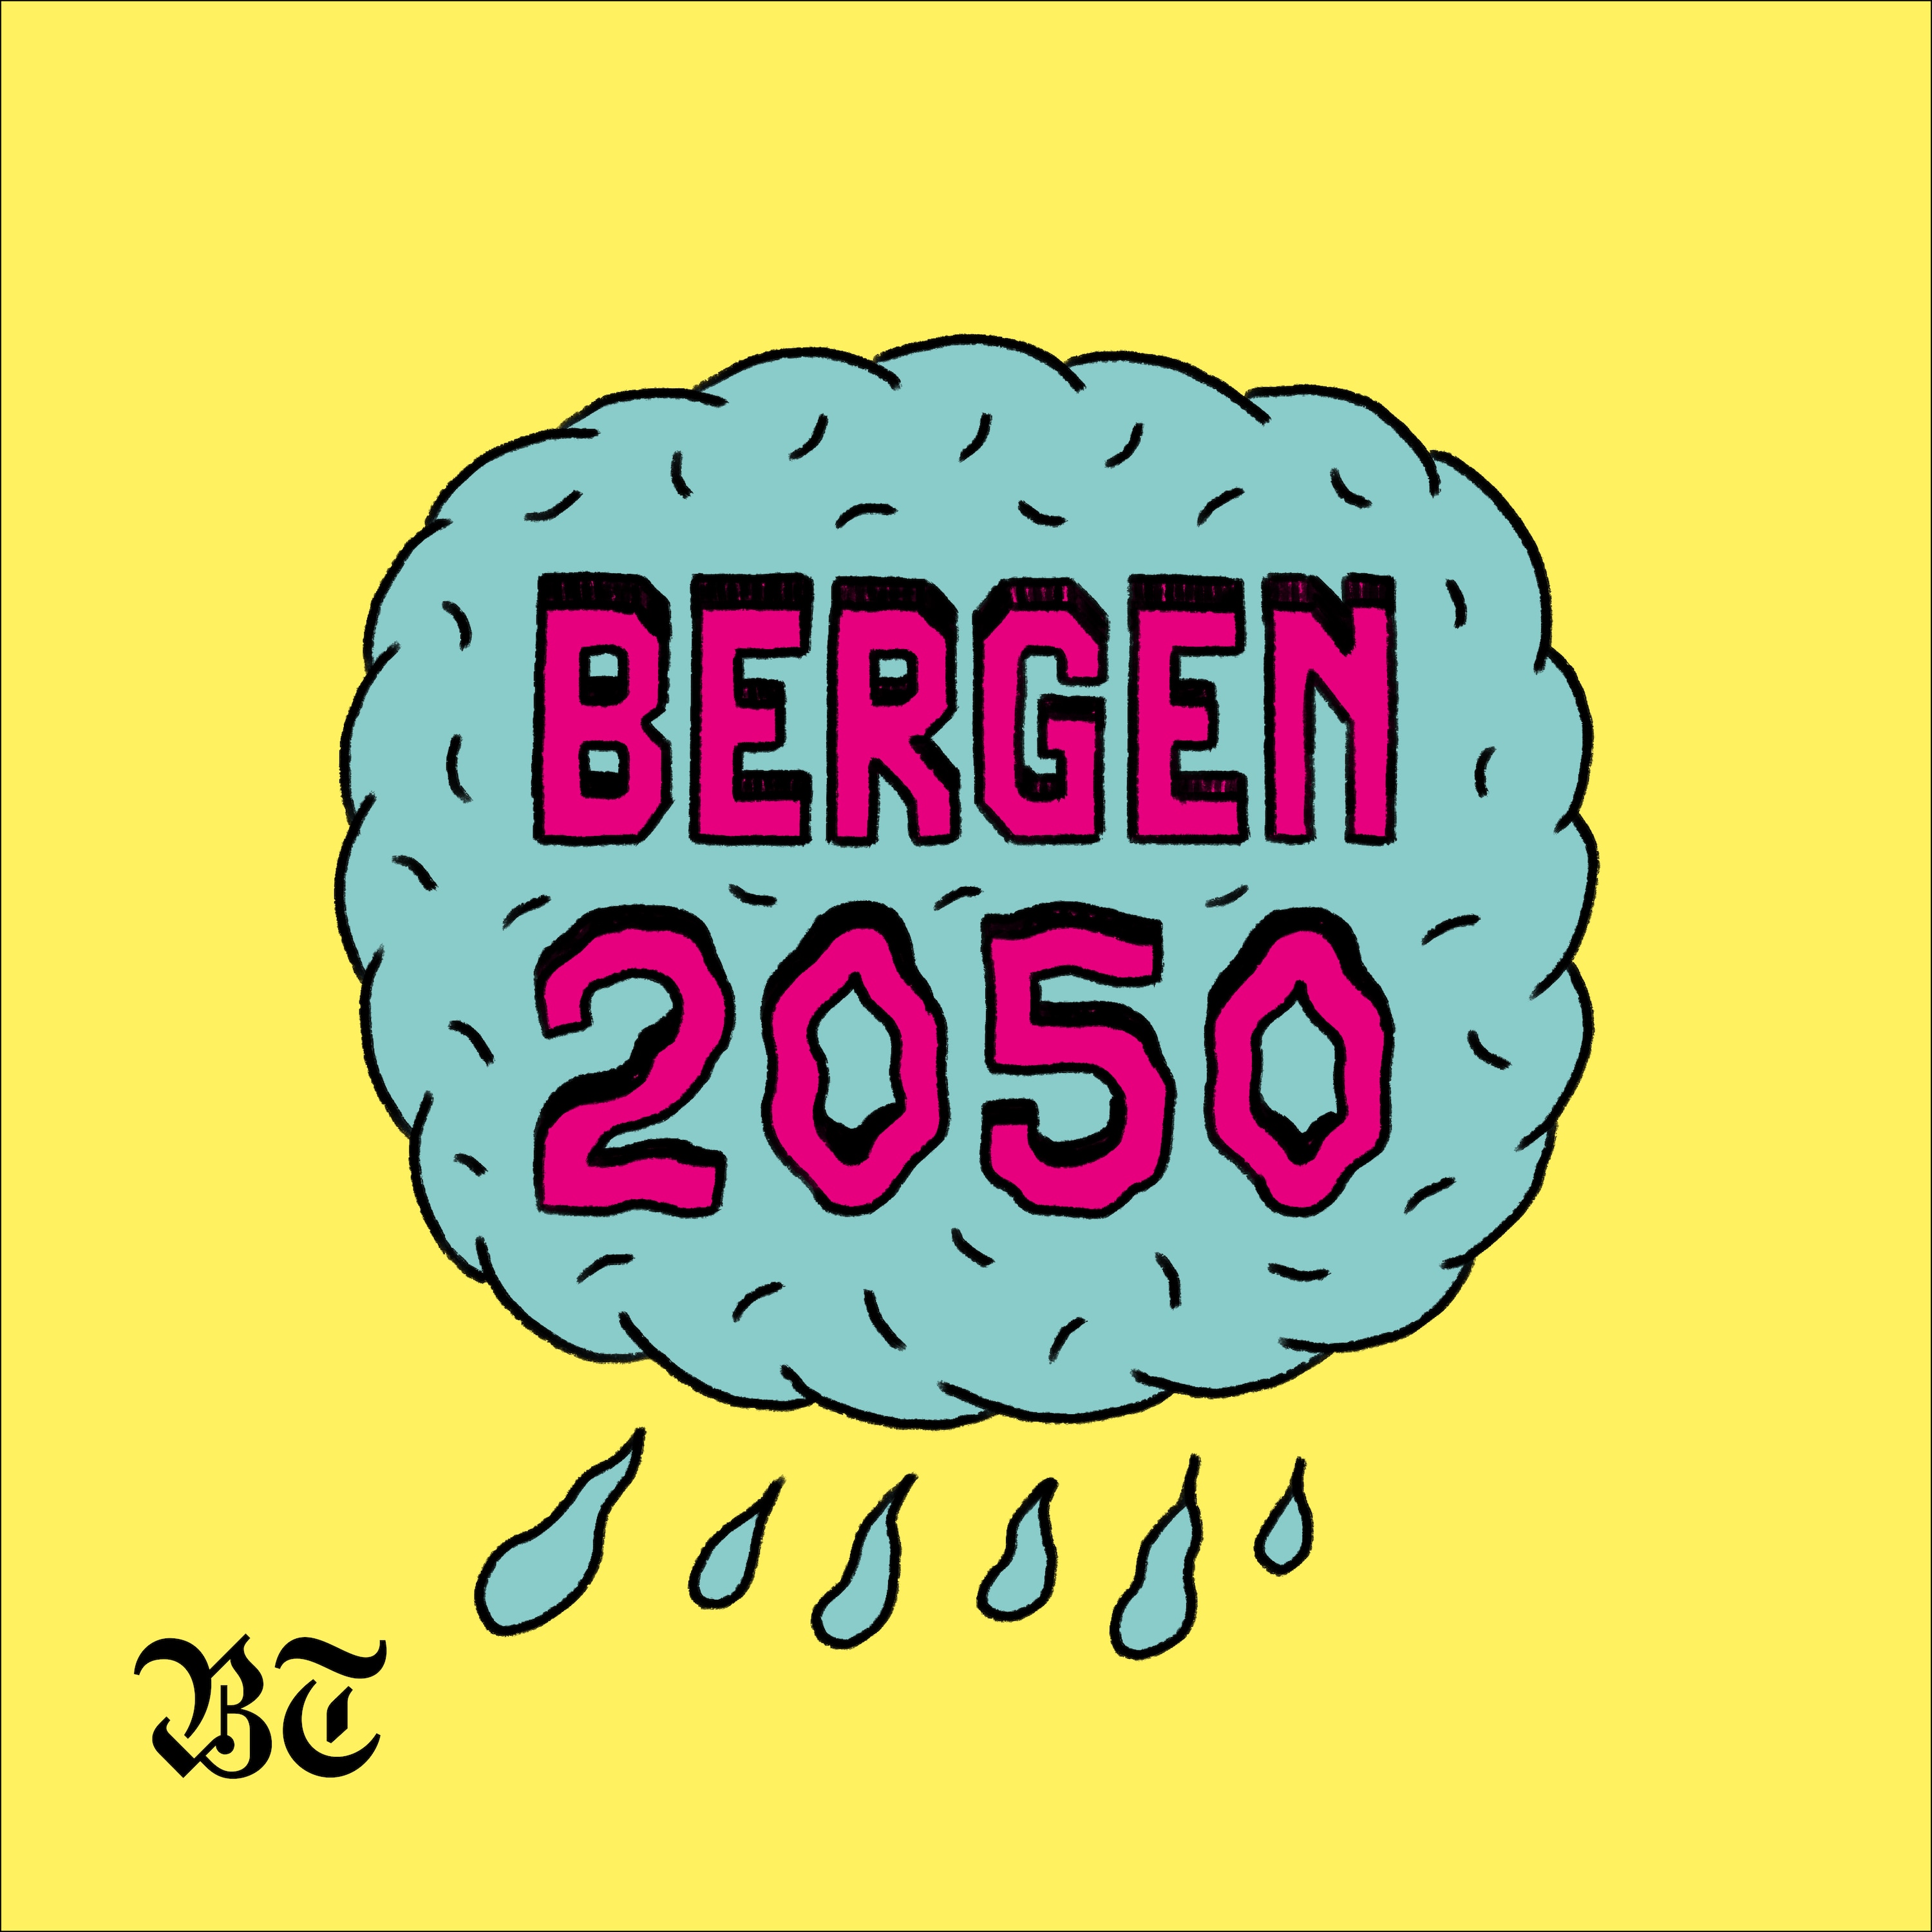 Bergen 2050